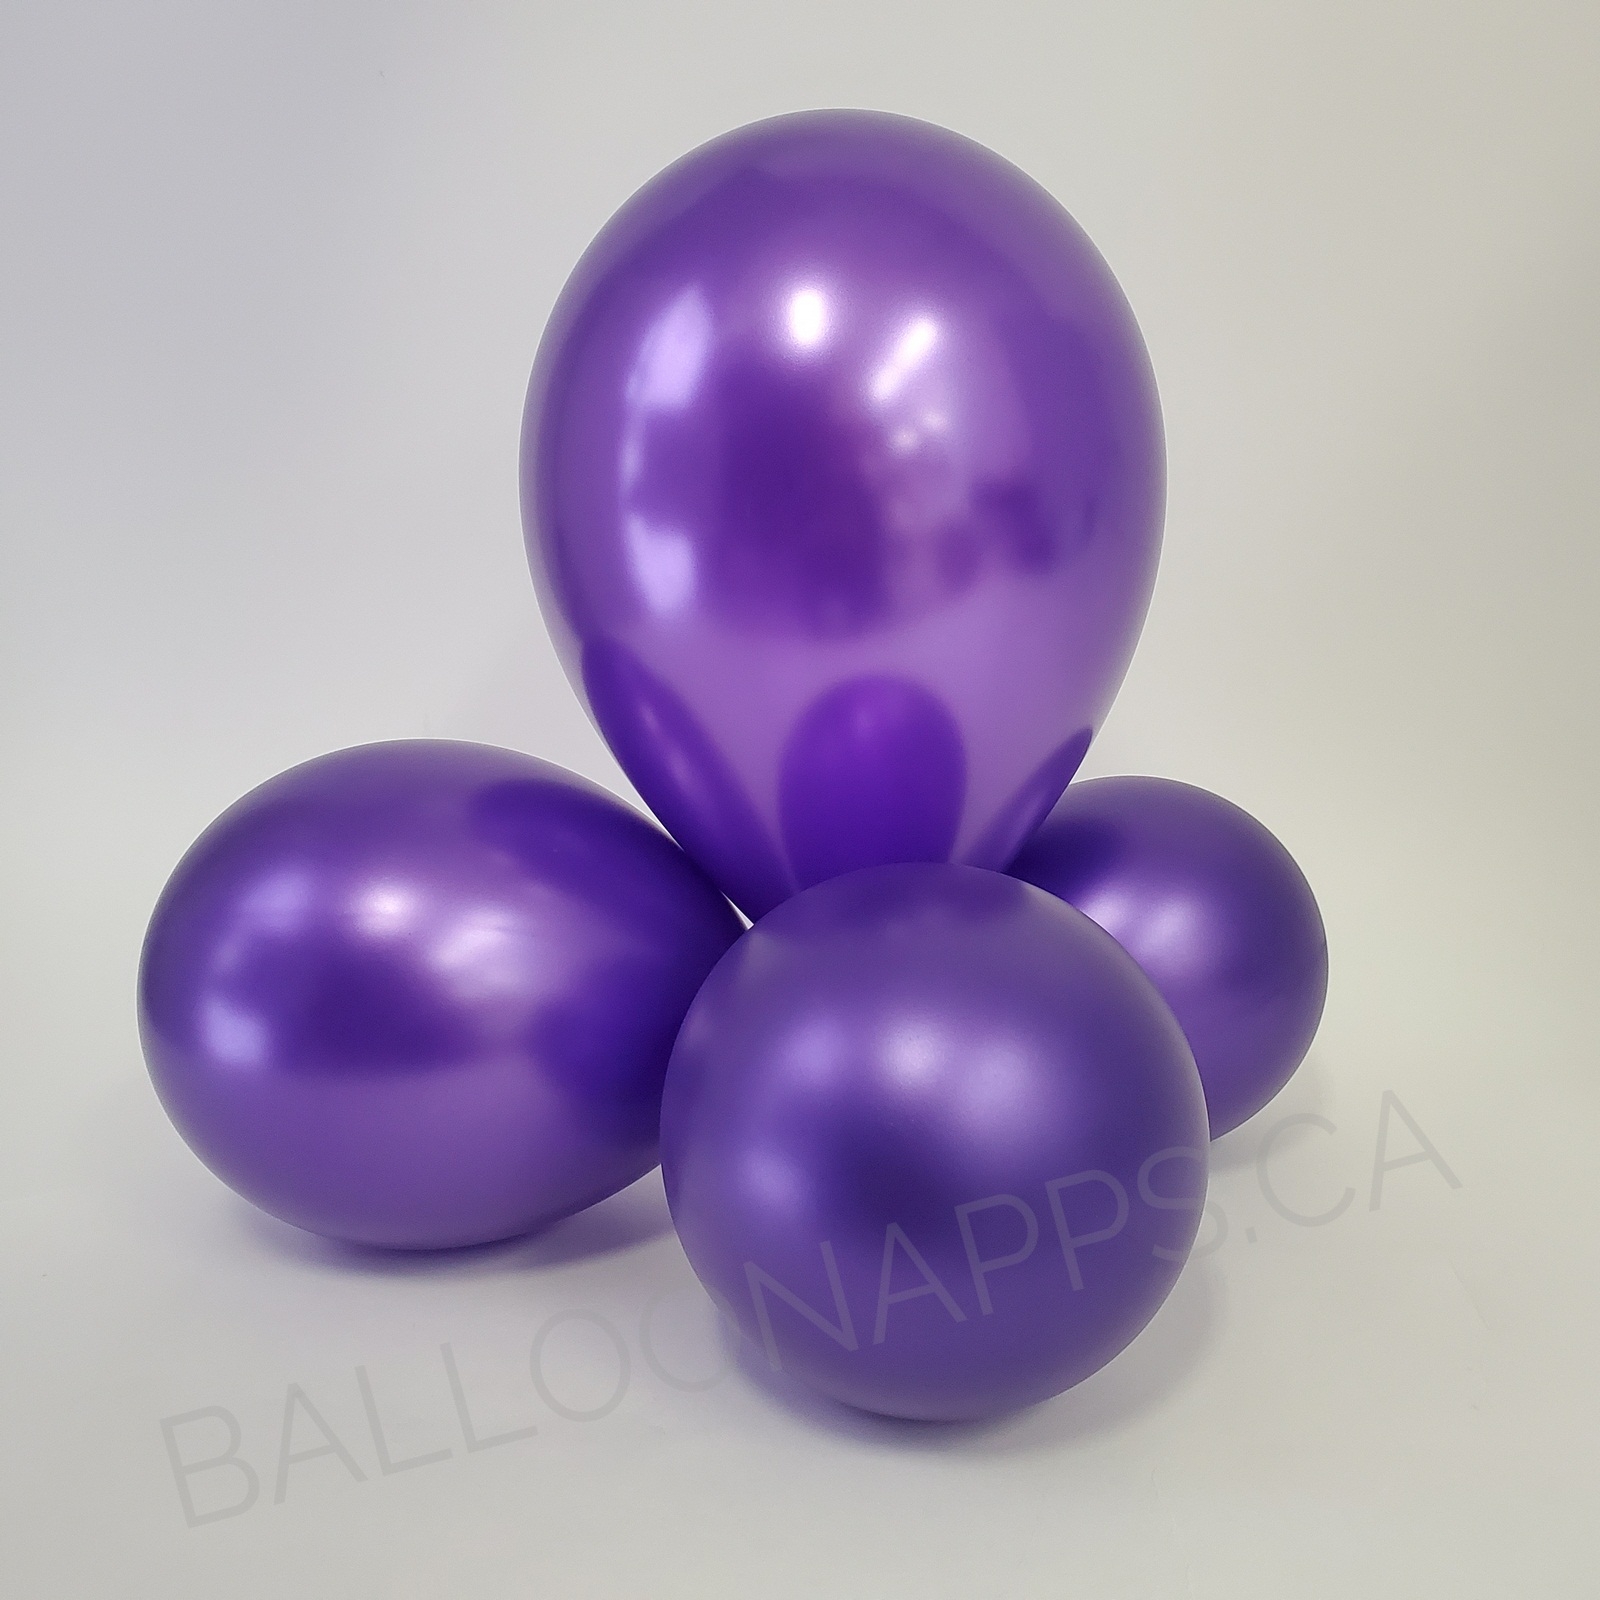 balloon texture BET (100) 160 Metallic Violet balloons